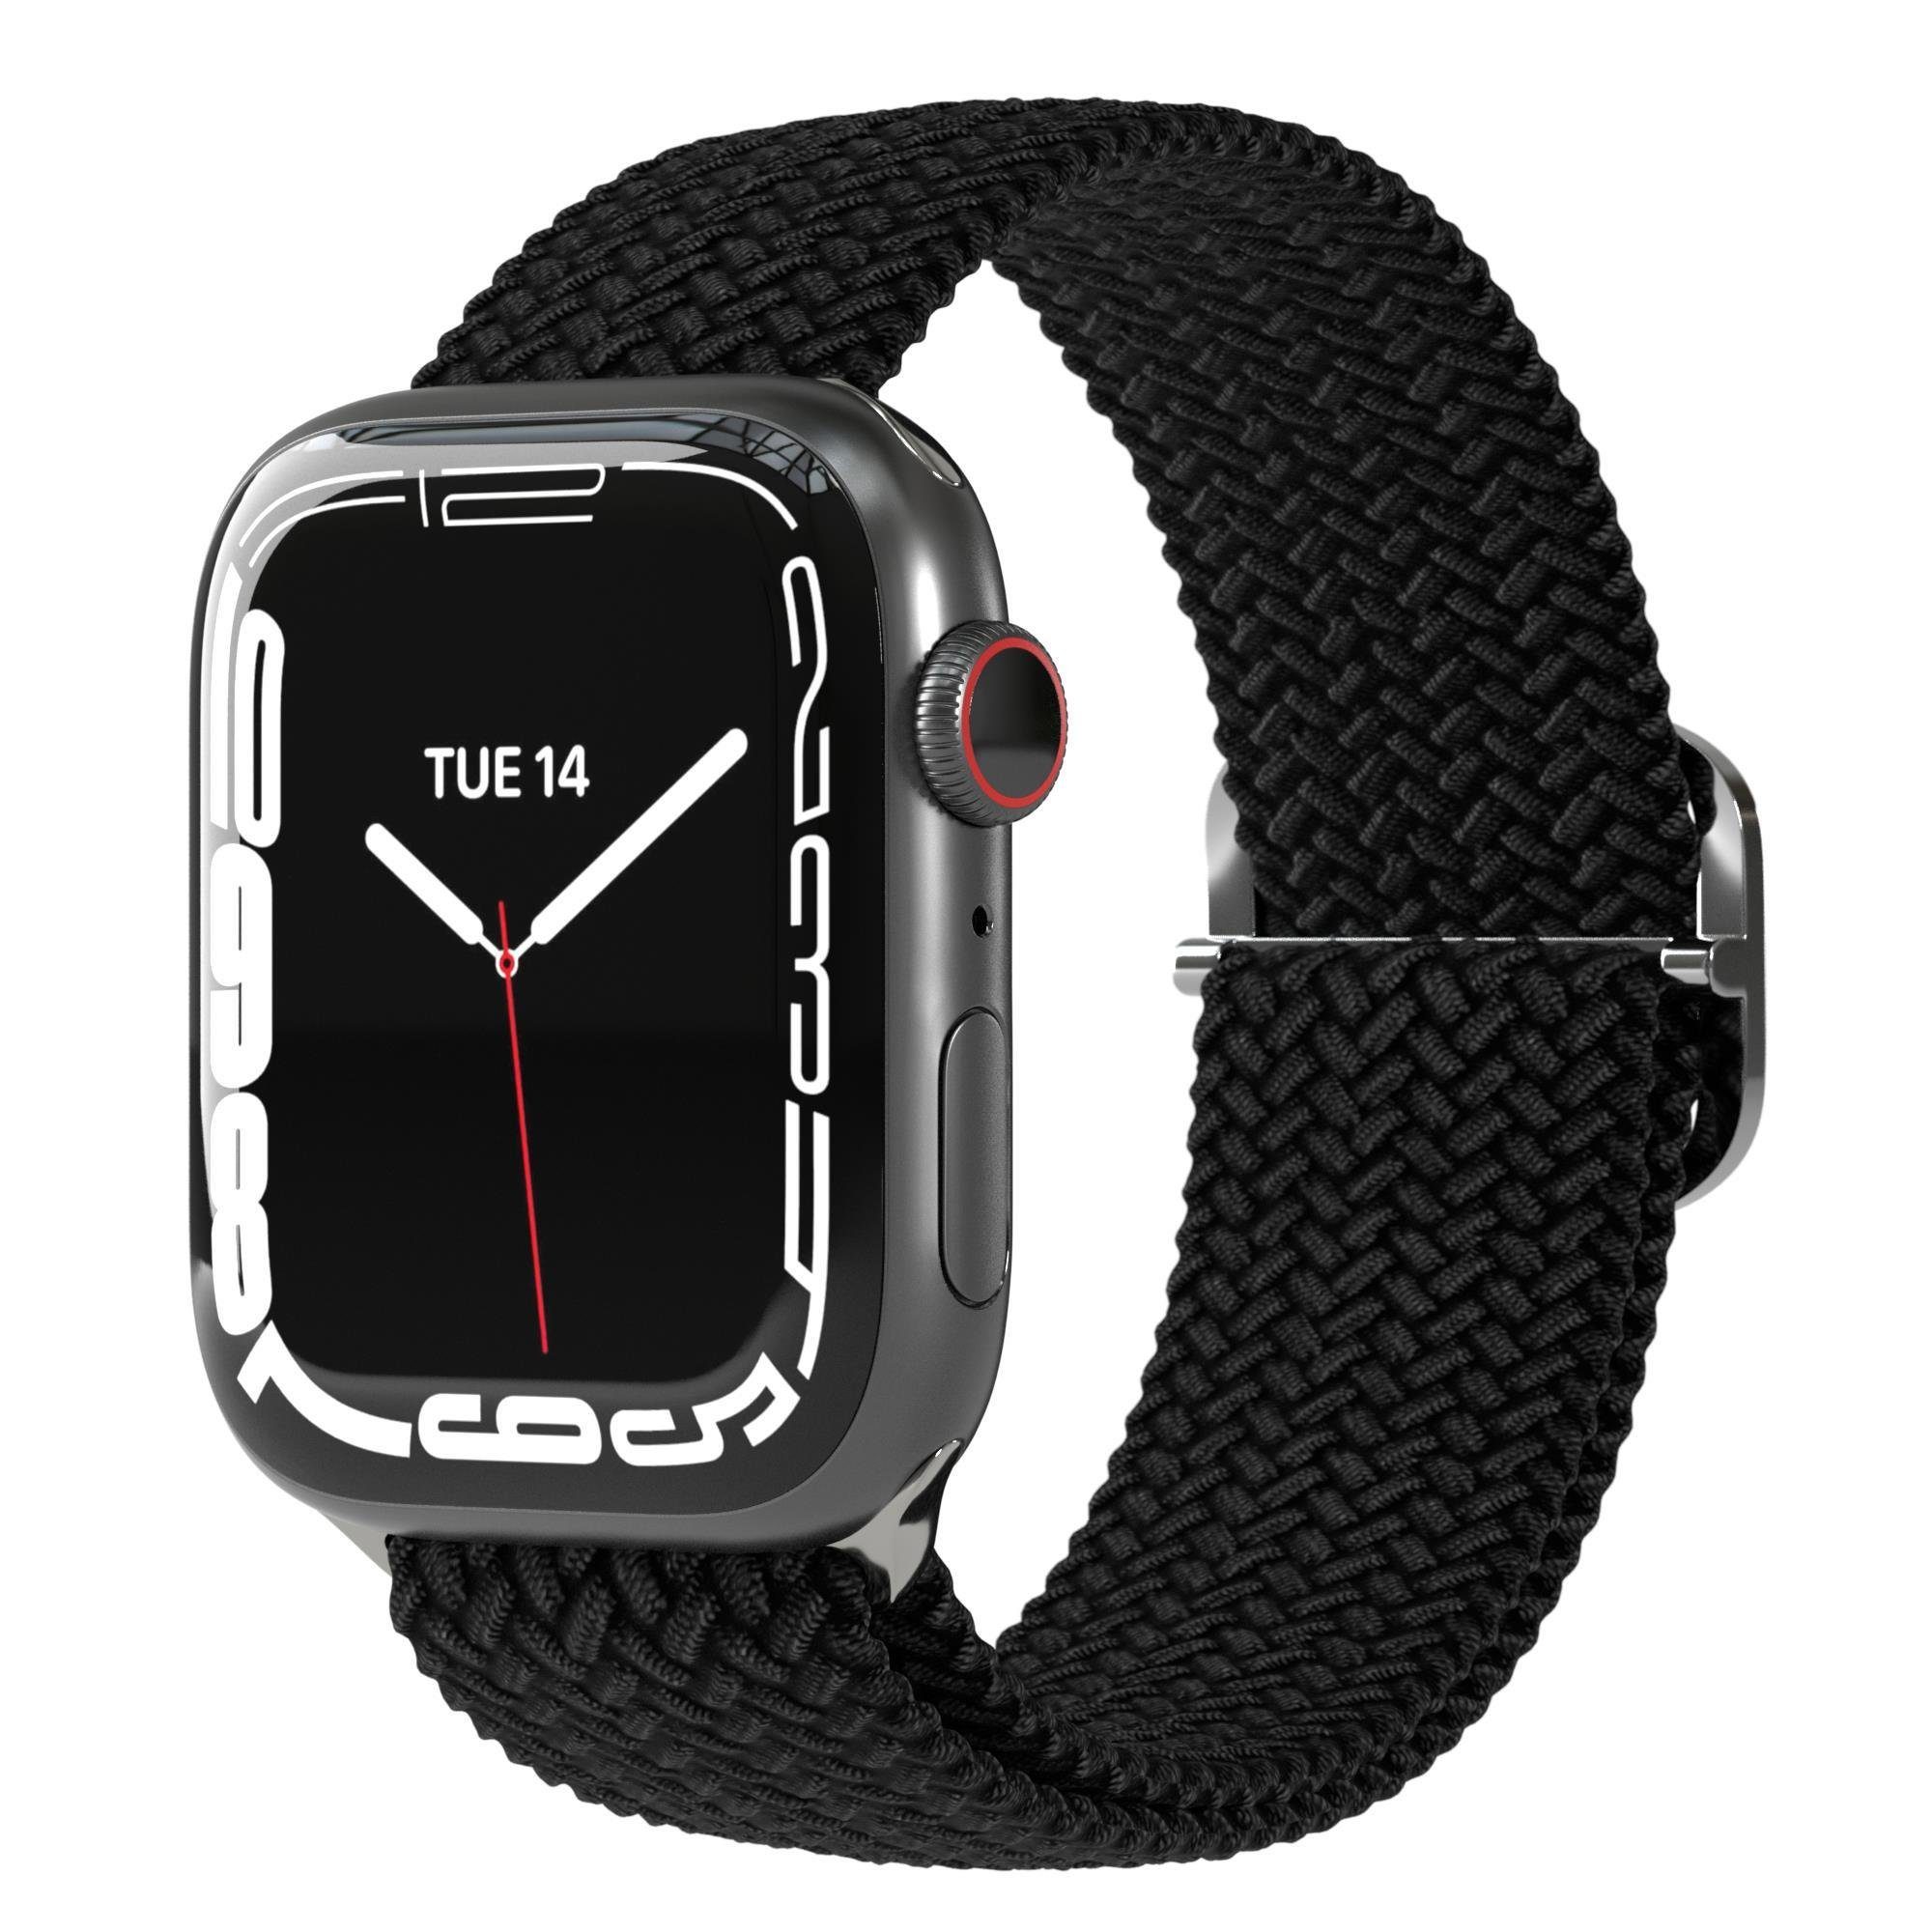 EAZY CASE Uhrenarmband 9 Fitnessband Apple 45mm 5 2 3 6 8 SE Schwarz 4 Unisex 42mm Ultra, für Watch iWatch 49mm elastisch 1 7 44mm Flechtband